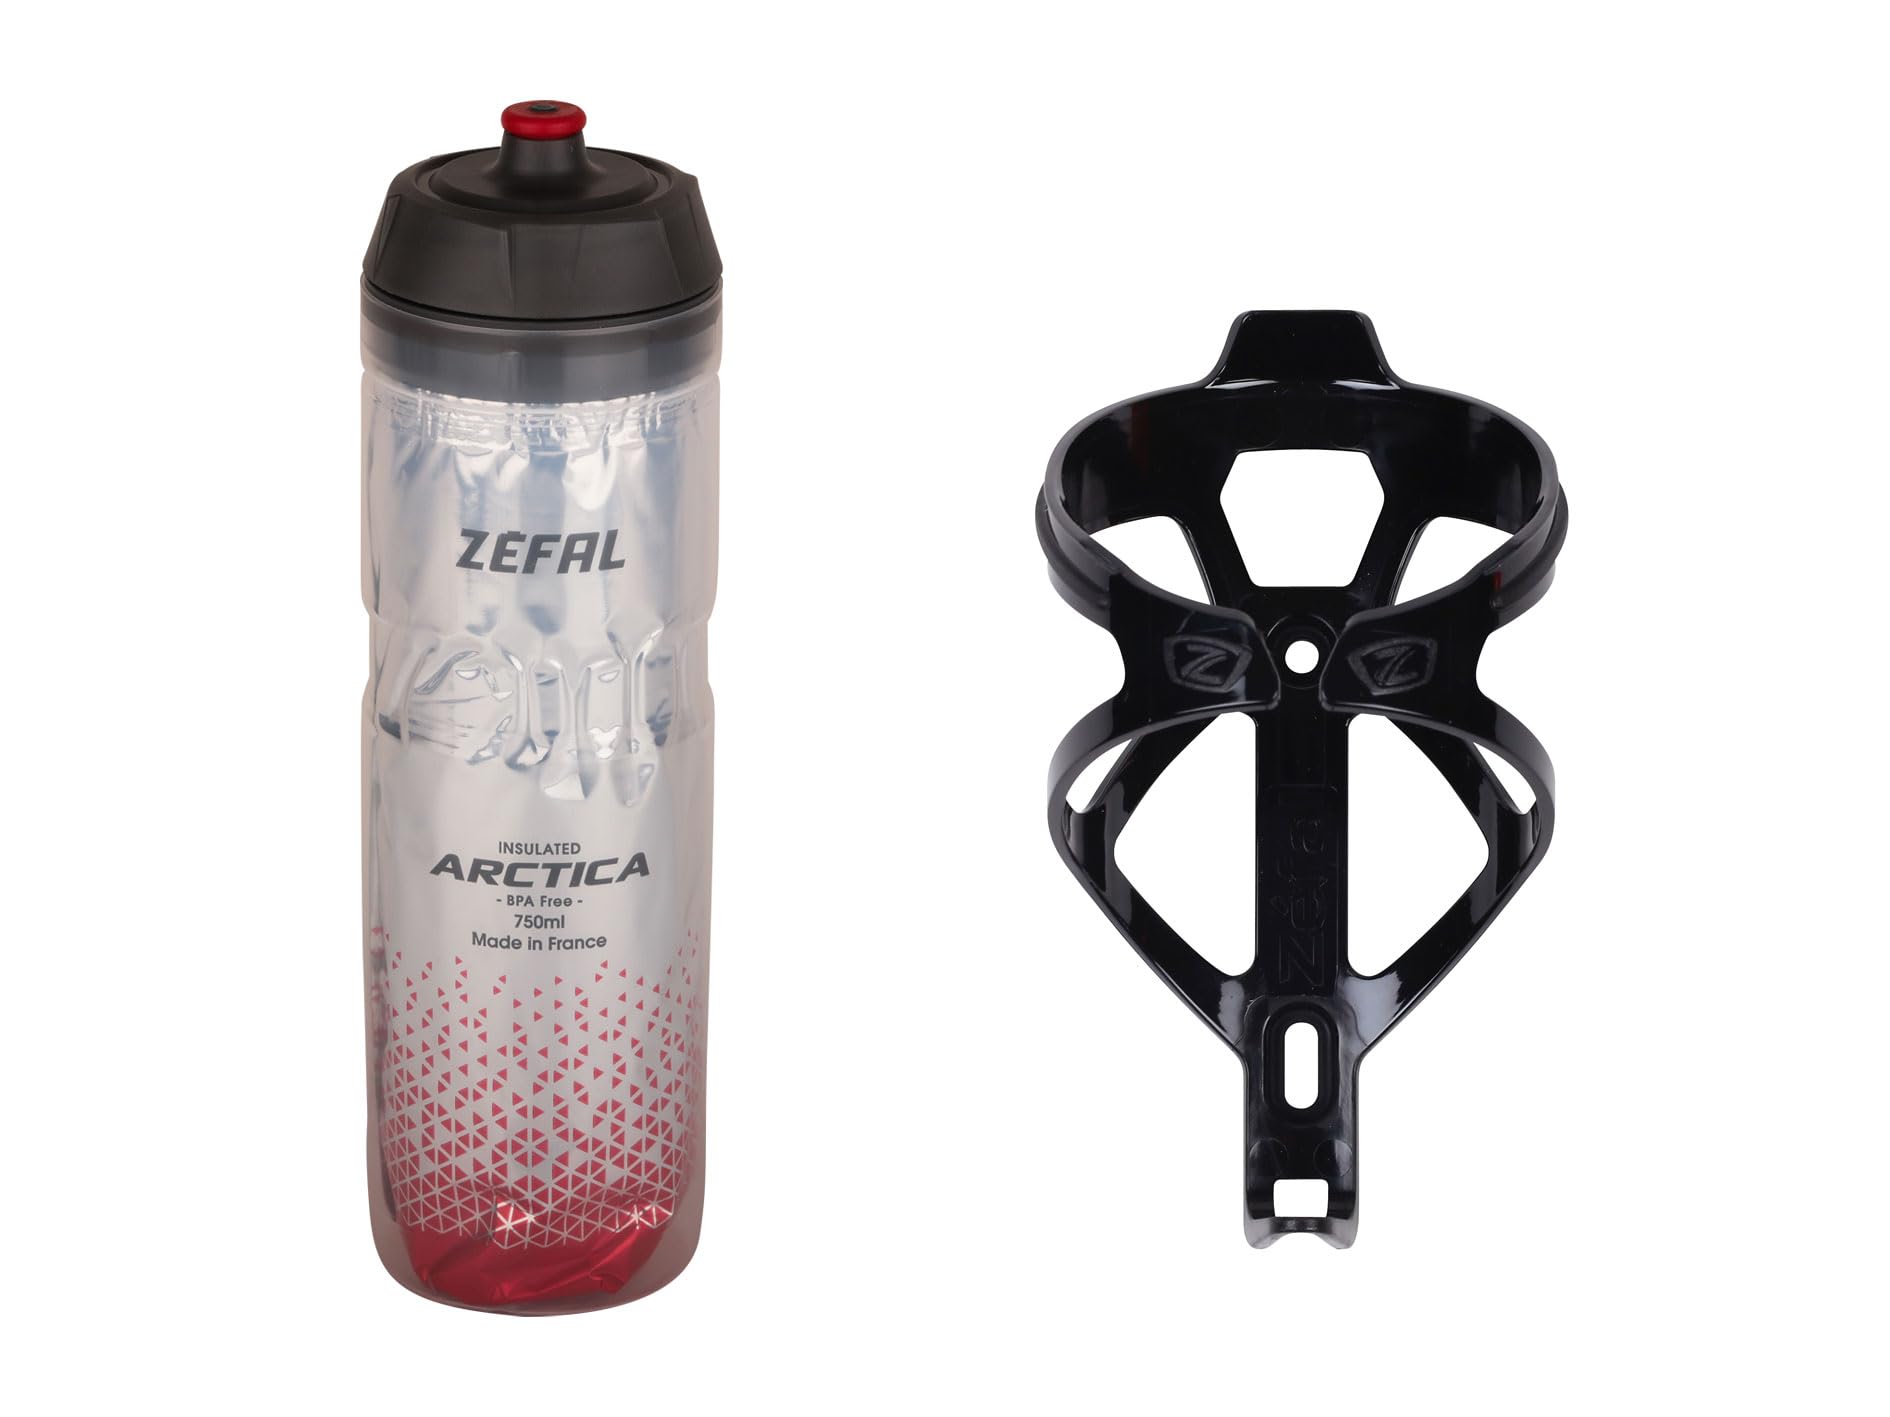 ZEFAL Pack Arctica 75 Silber-Rot und Pulse B2 Schwarz - Hydration Pack mit Isothermischer Fahrradflasche und Fahrradflaschenhalter - Fahrrad Trinkflasche mit Halter - 146 g von Zéfal